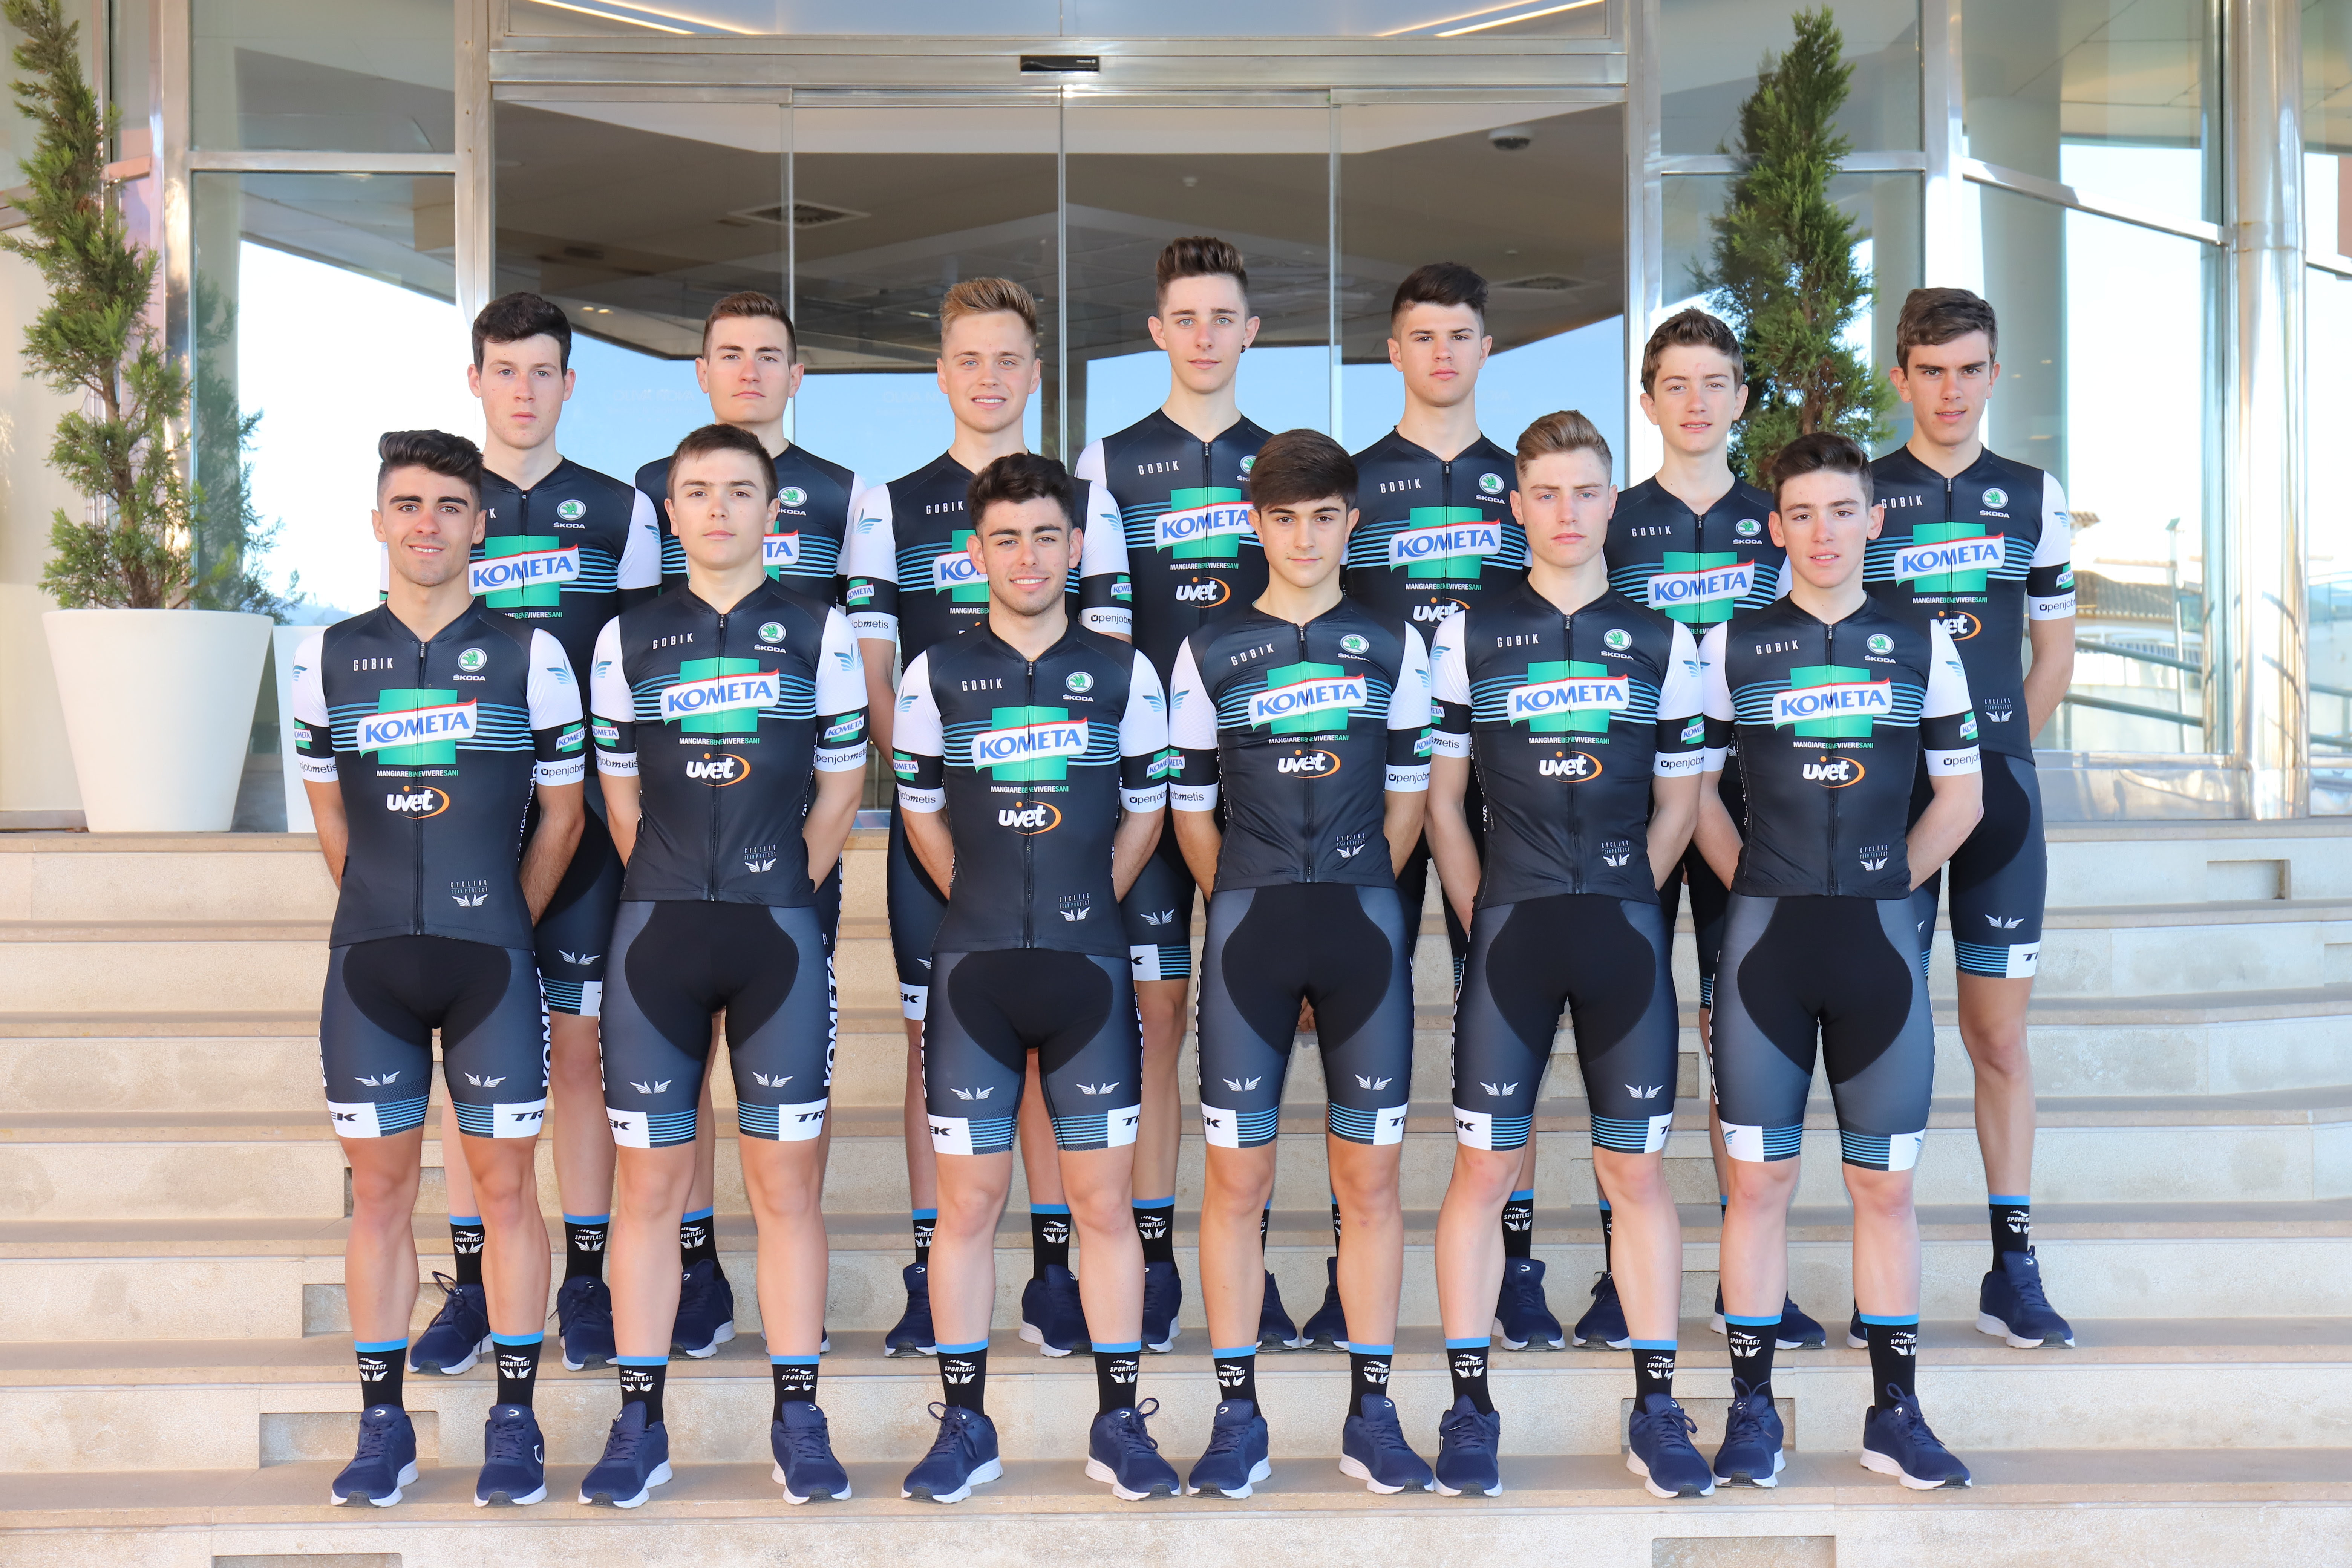 El Pelotón Presentados los equipos del Kometa Cycling Team 2019